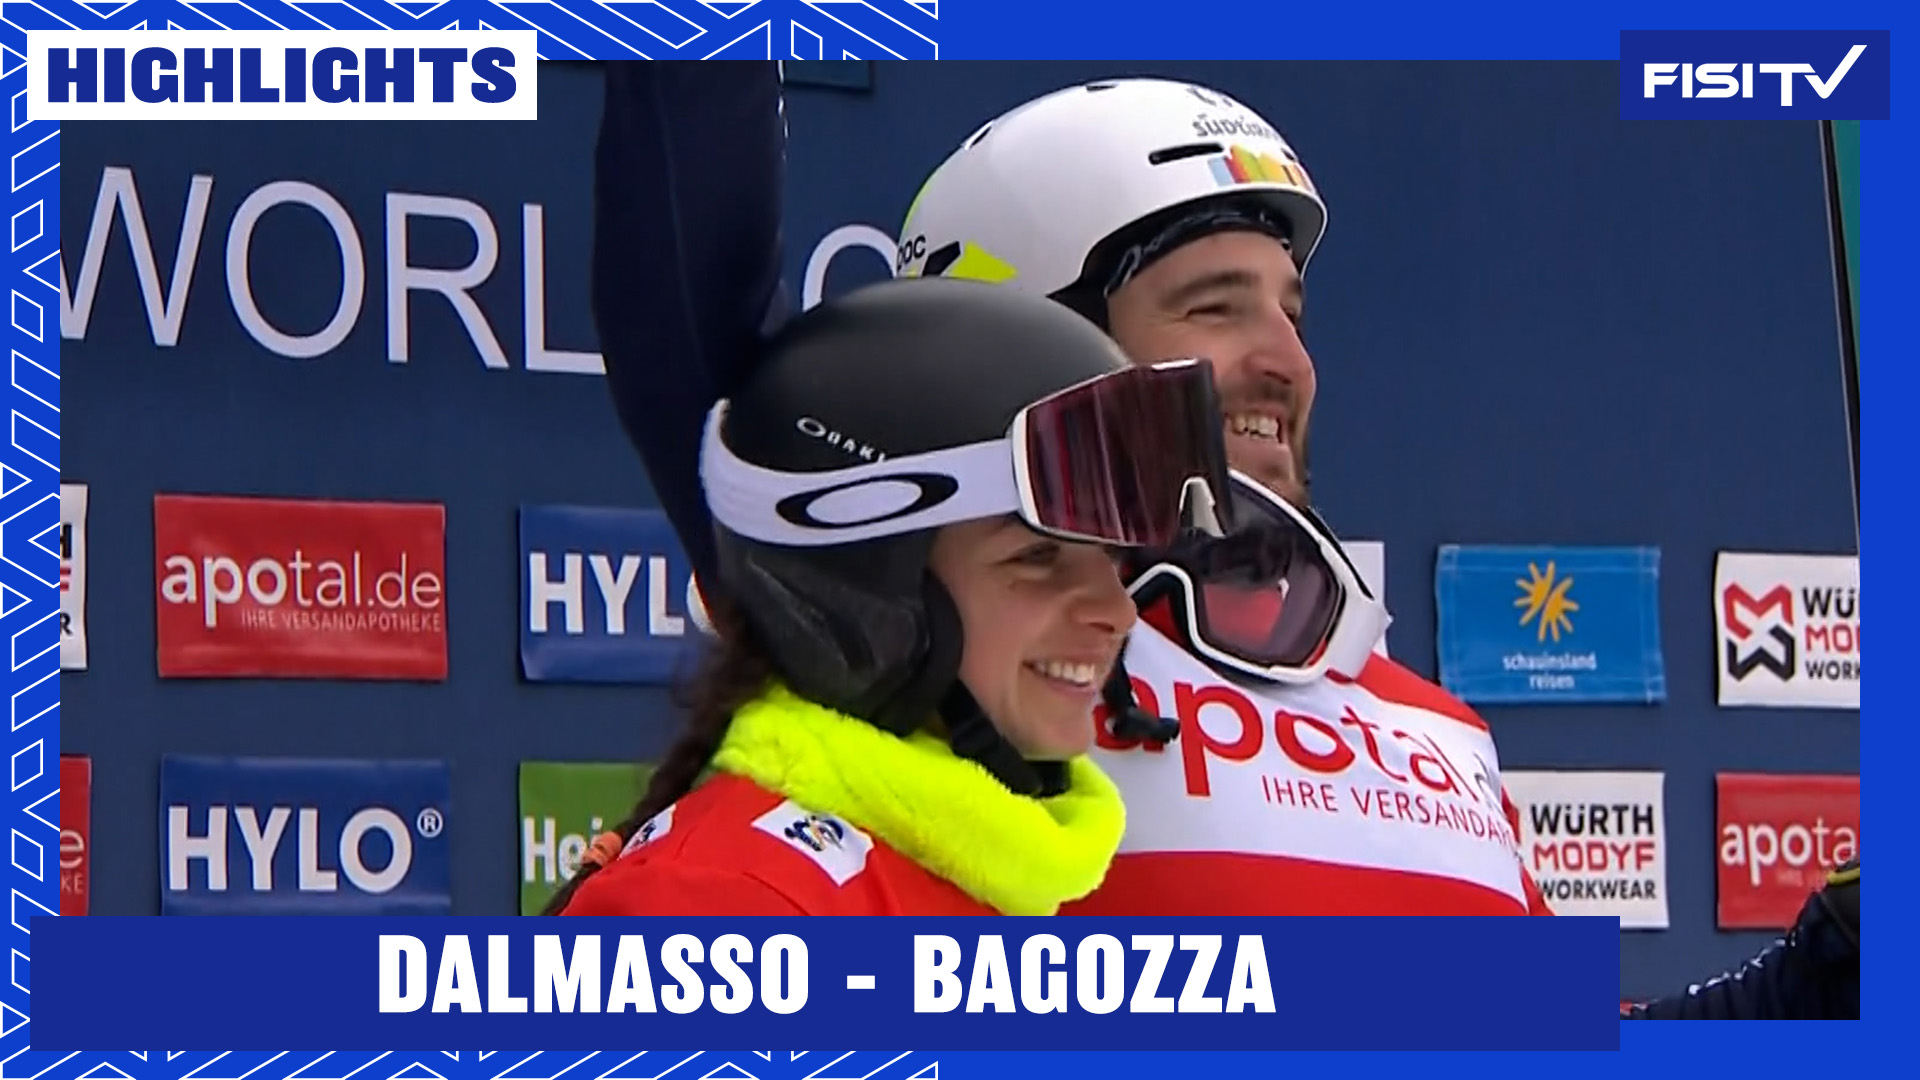 Dalmasso/Bagozza chiudono con una vittoria, anche Bormolini/Caffont sul podio | FISI TV